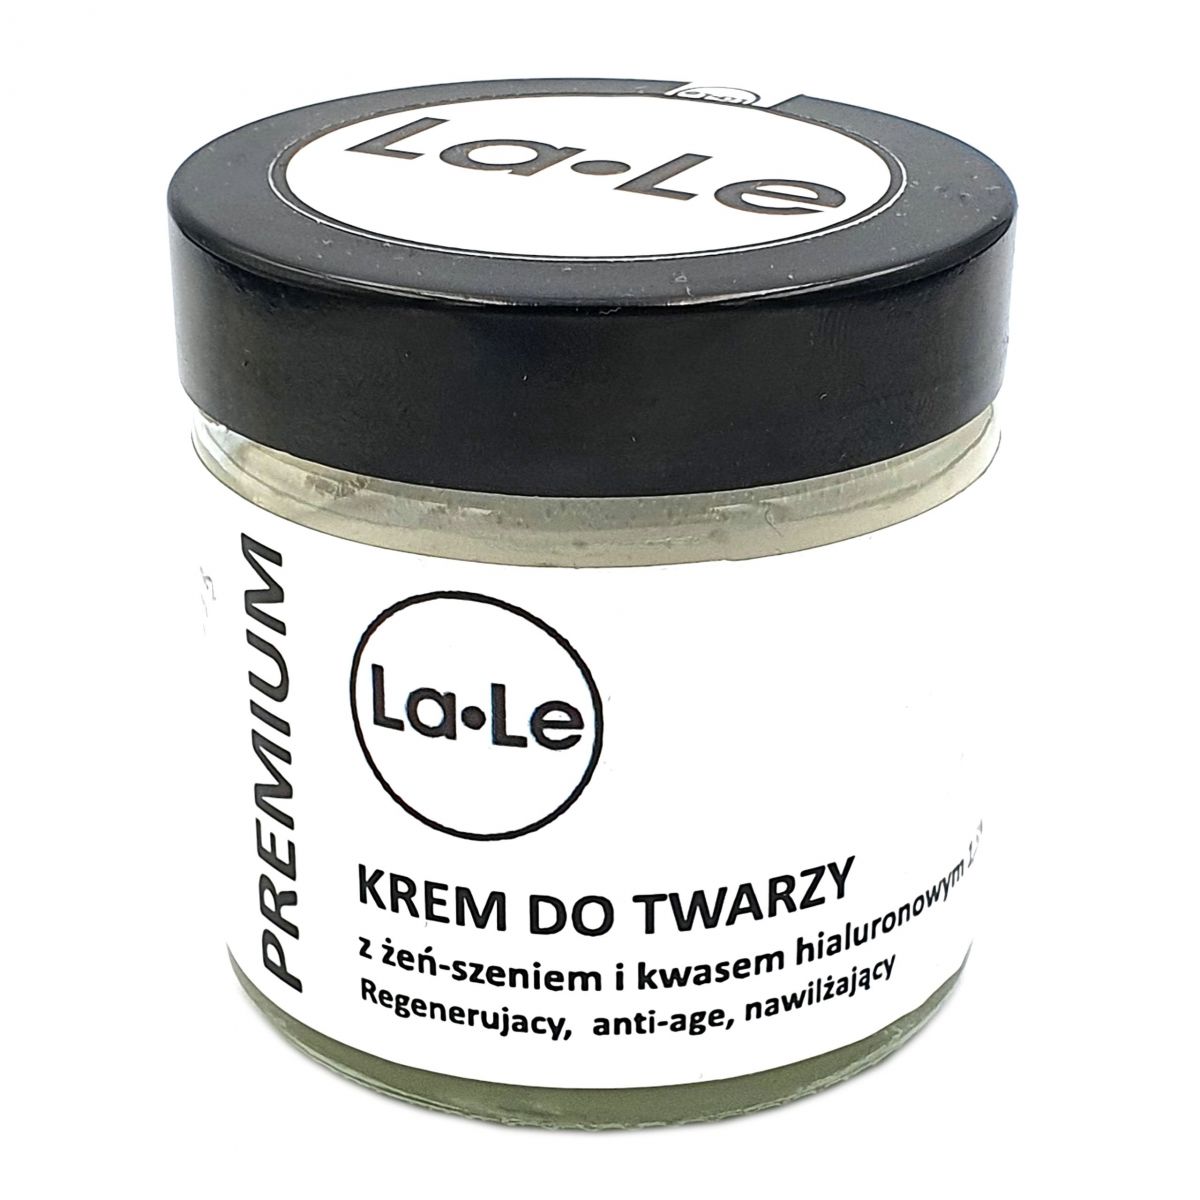 La-Le Krem do twarzy z żeń- szeniem i kwasem hialuronowym 1,5% - 60ml